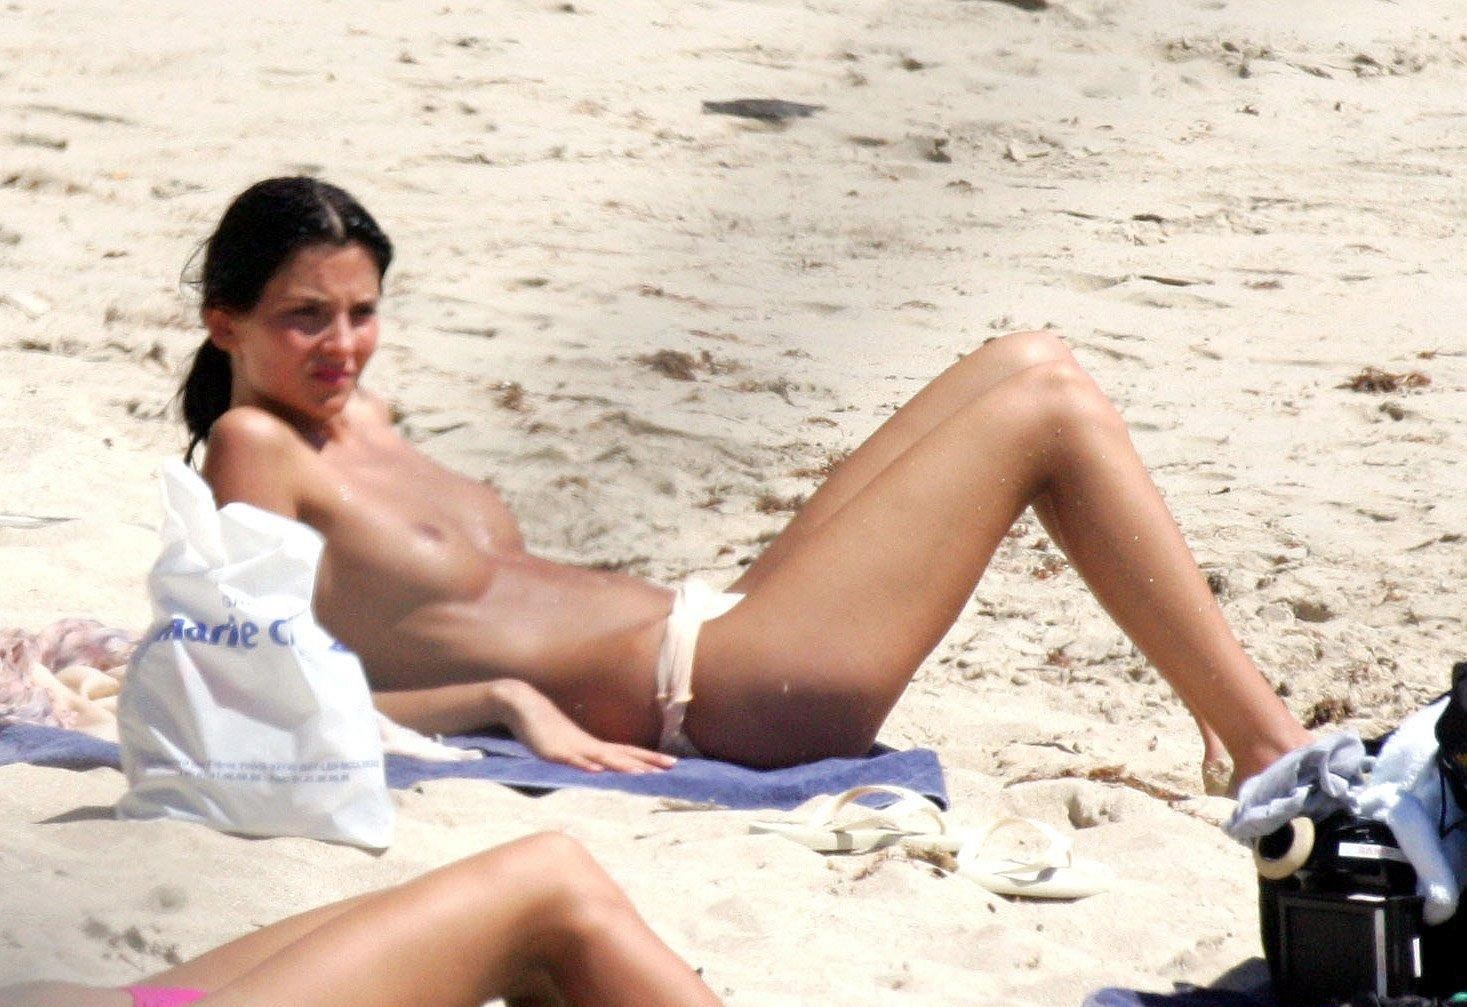 Jeunes de la plage, seins nus, profitant du soleil, seins nus, prenant un bain de soleil.
 #67257004